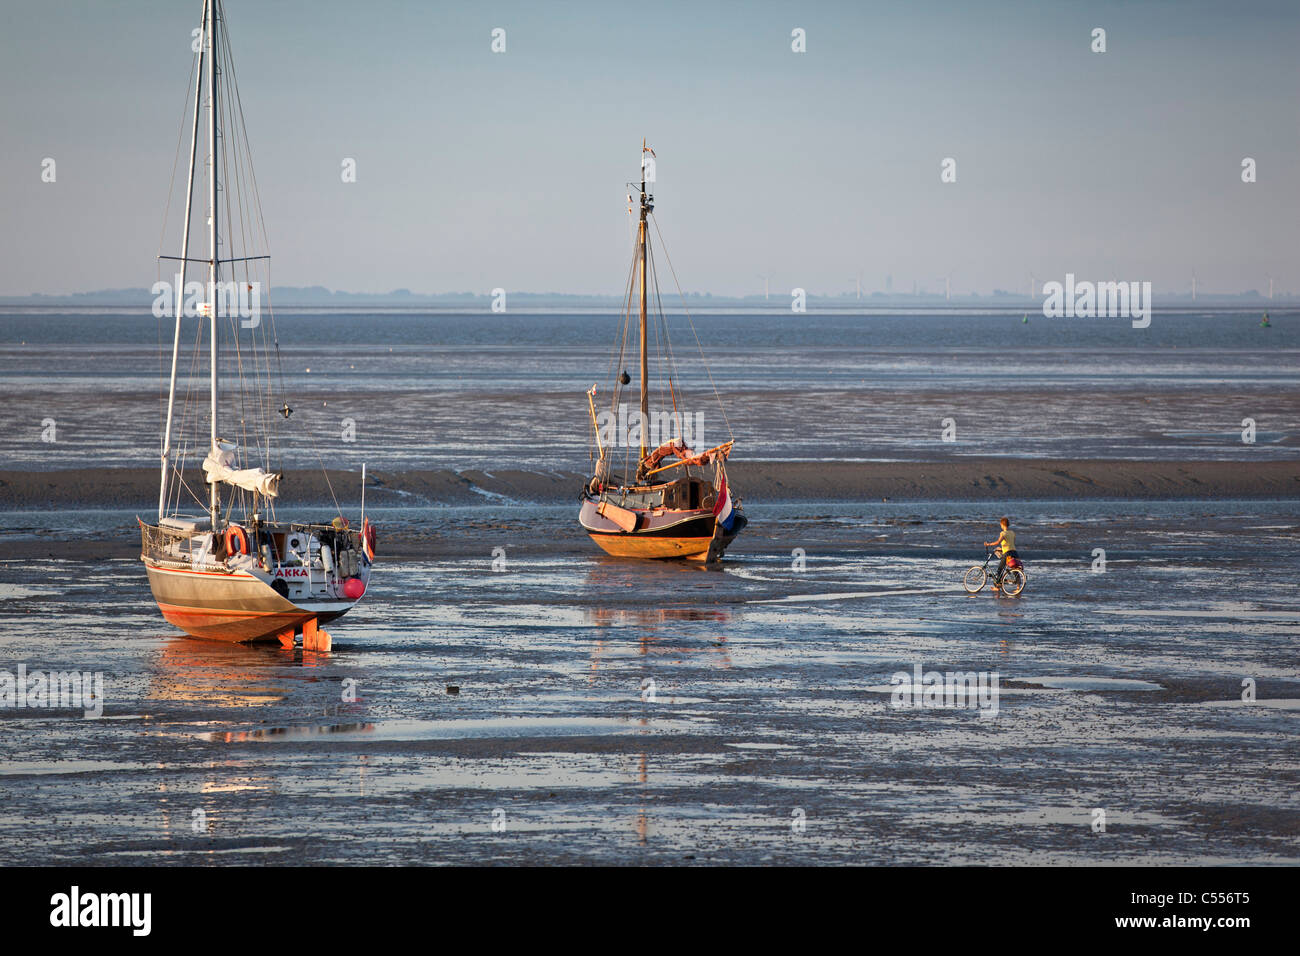 Les Pays-Bas, l'Île Ameland Nes, appartenant à des îles de la mer des Wadden. Sur des bateaux à voile de boue dans le port. Femme et vélo. Banque D'Images